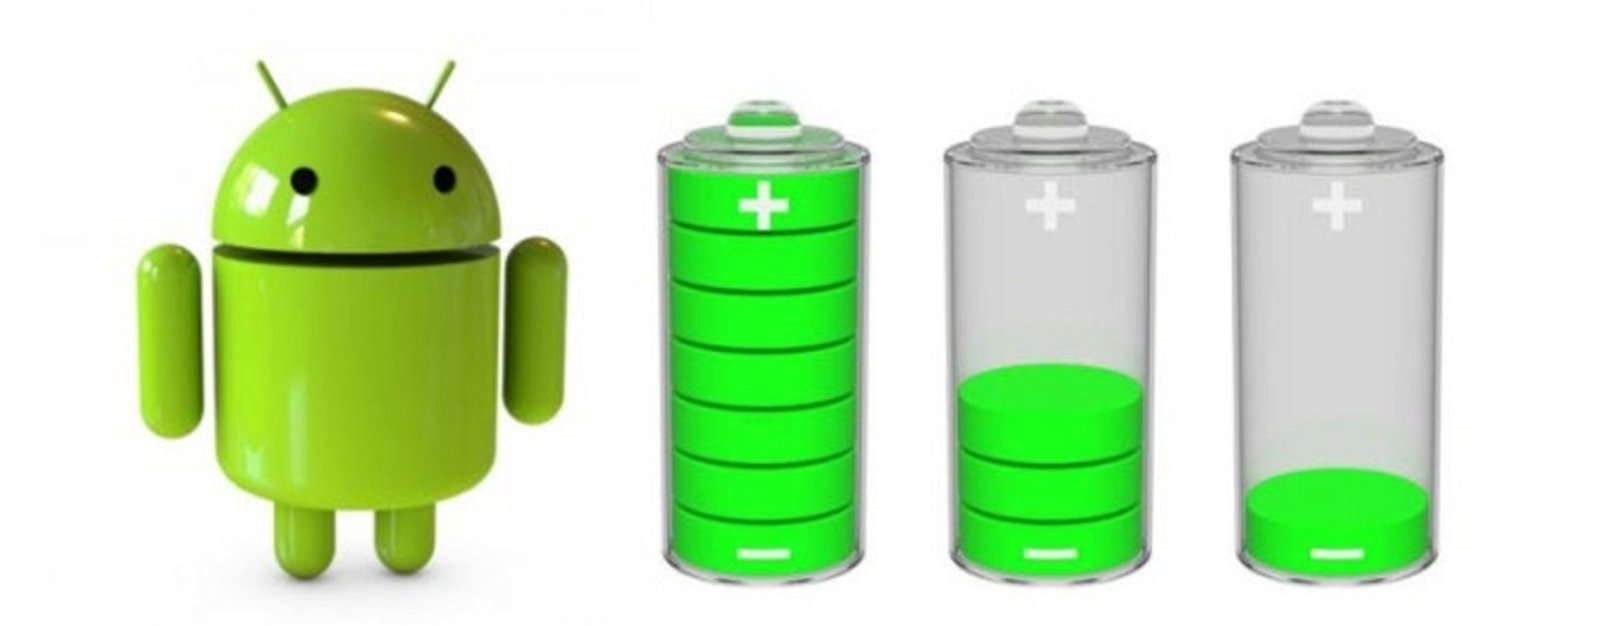 Duración batería Android